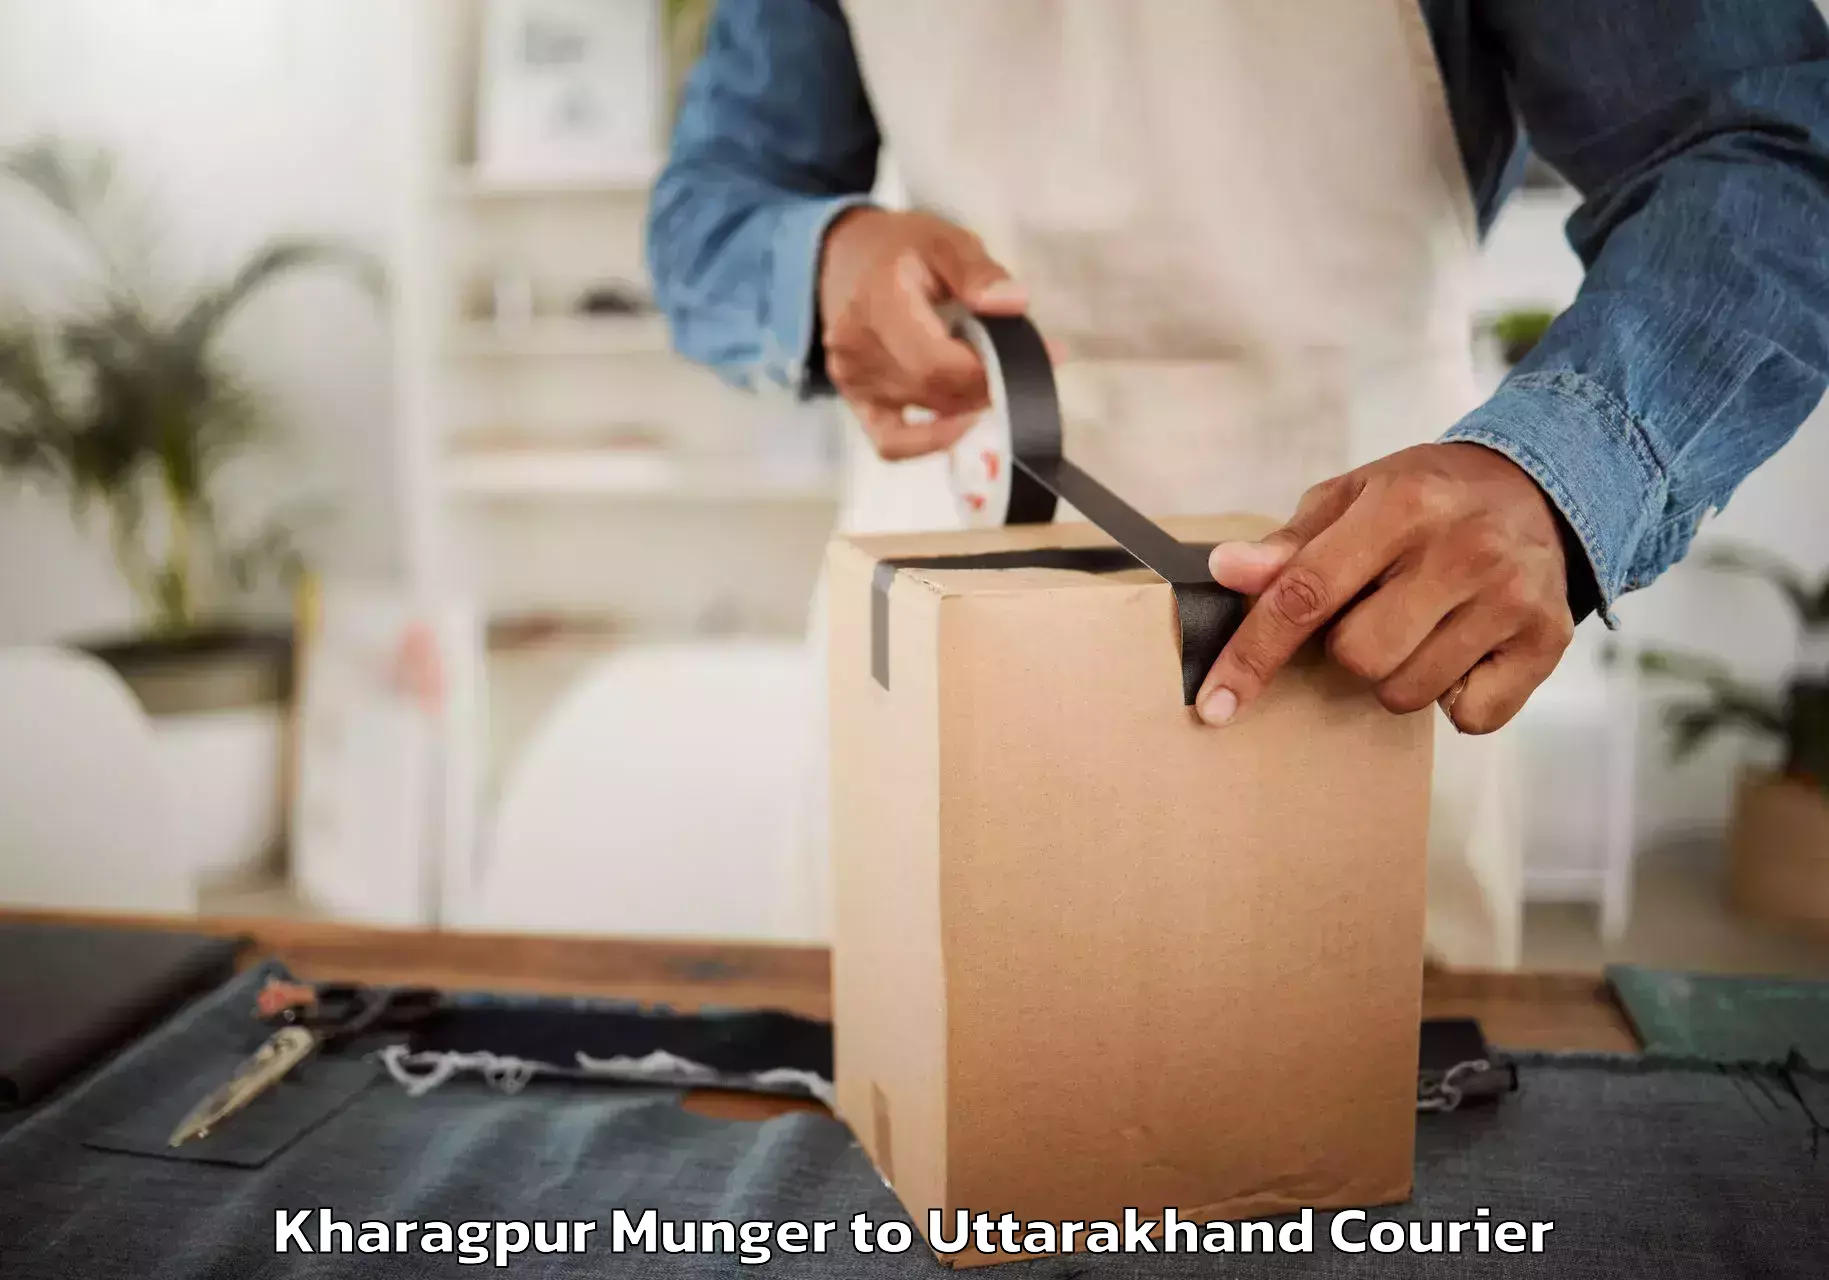 Furniture moving services Kharagpur Munger to Doiwala